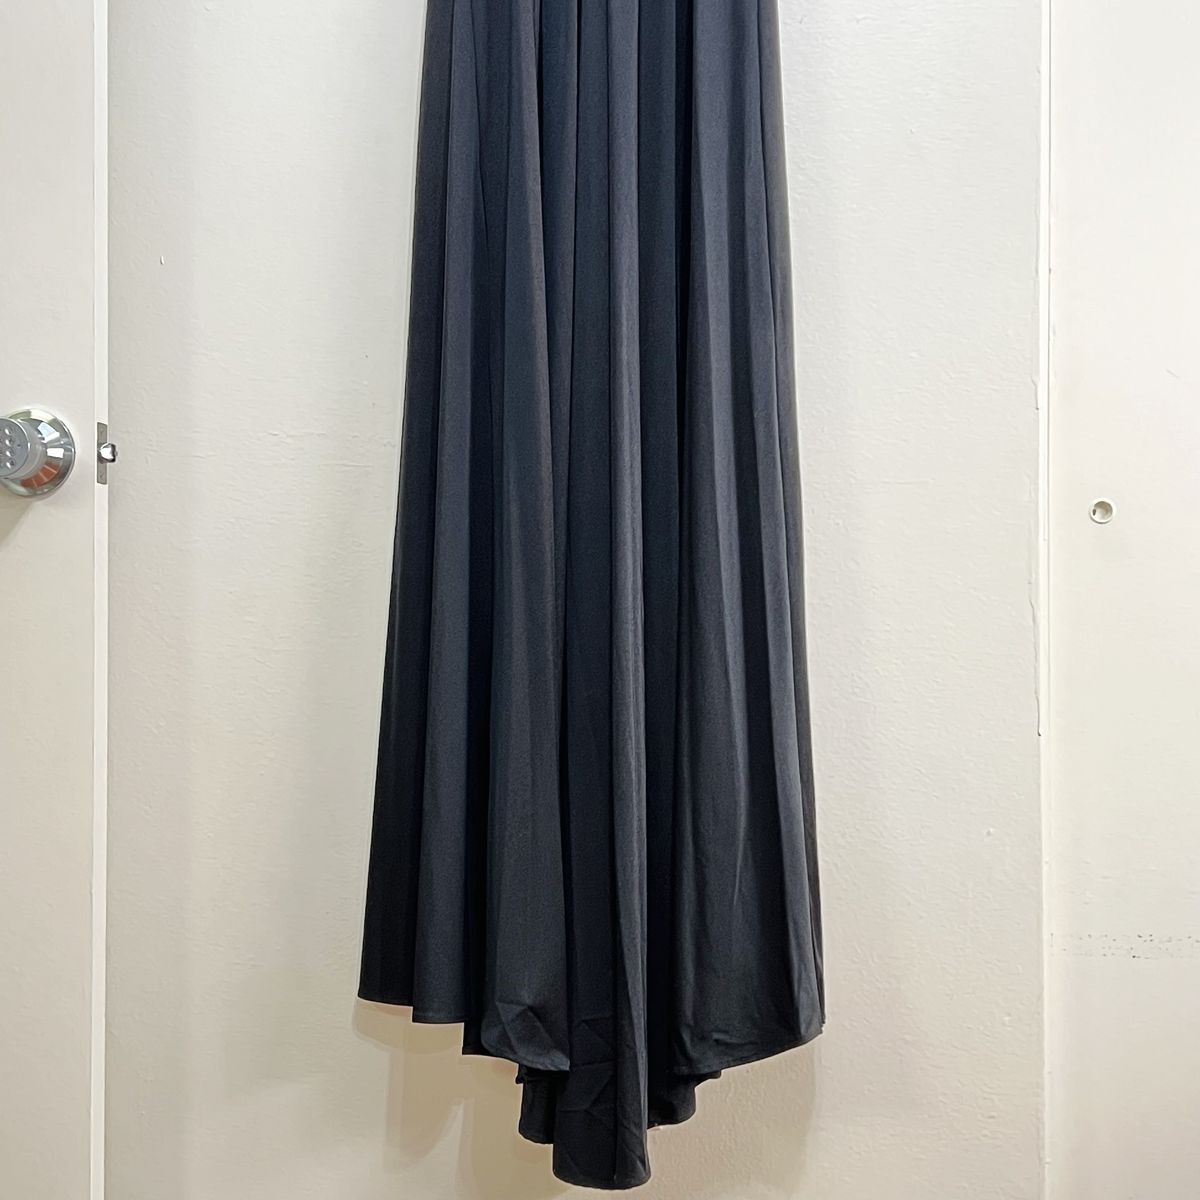 Style 28547 La Femme Size 6 Plunge Black Side Slit Dress on Queenly